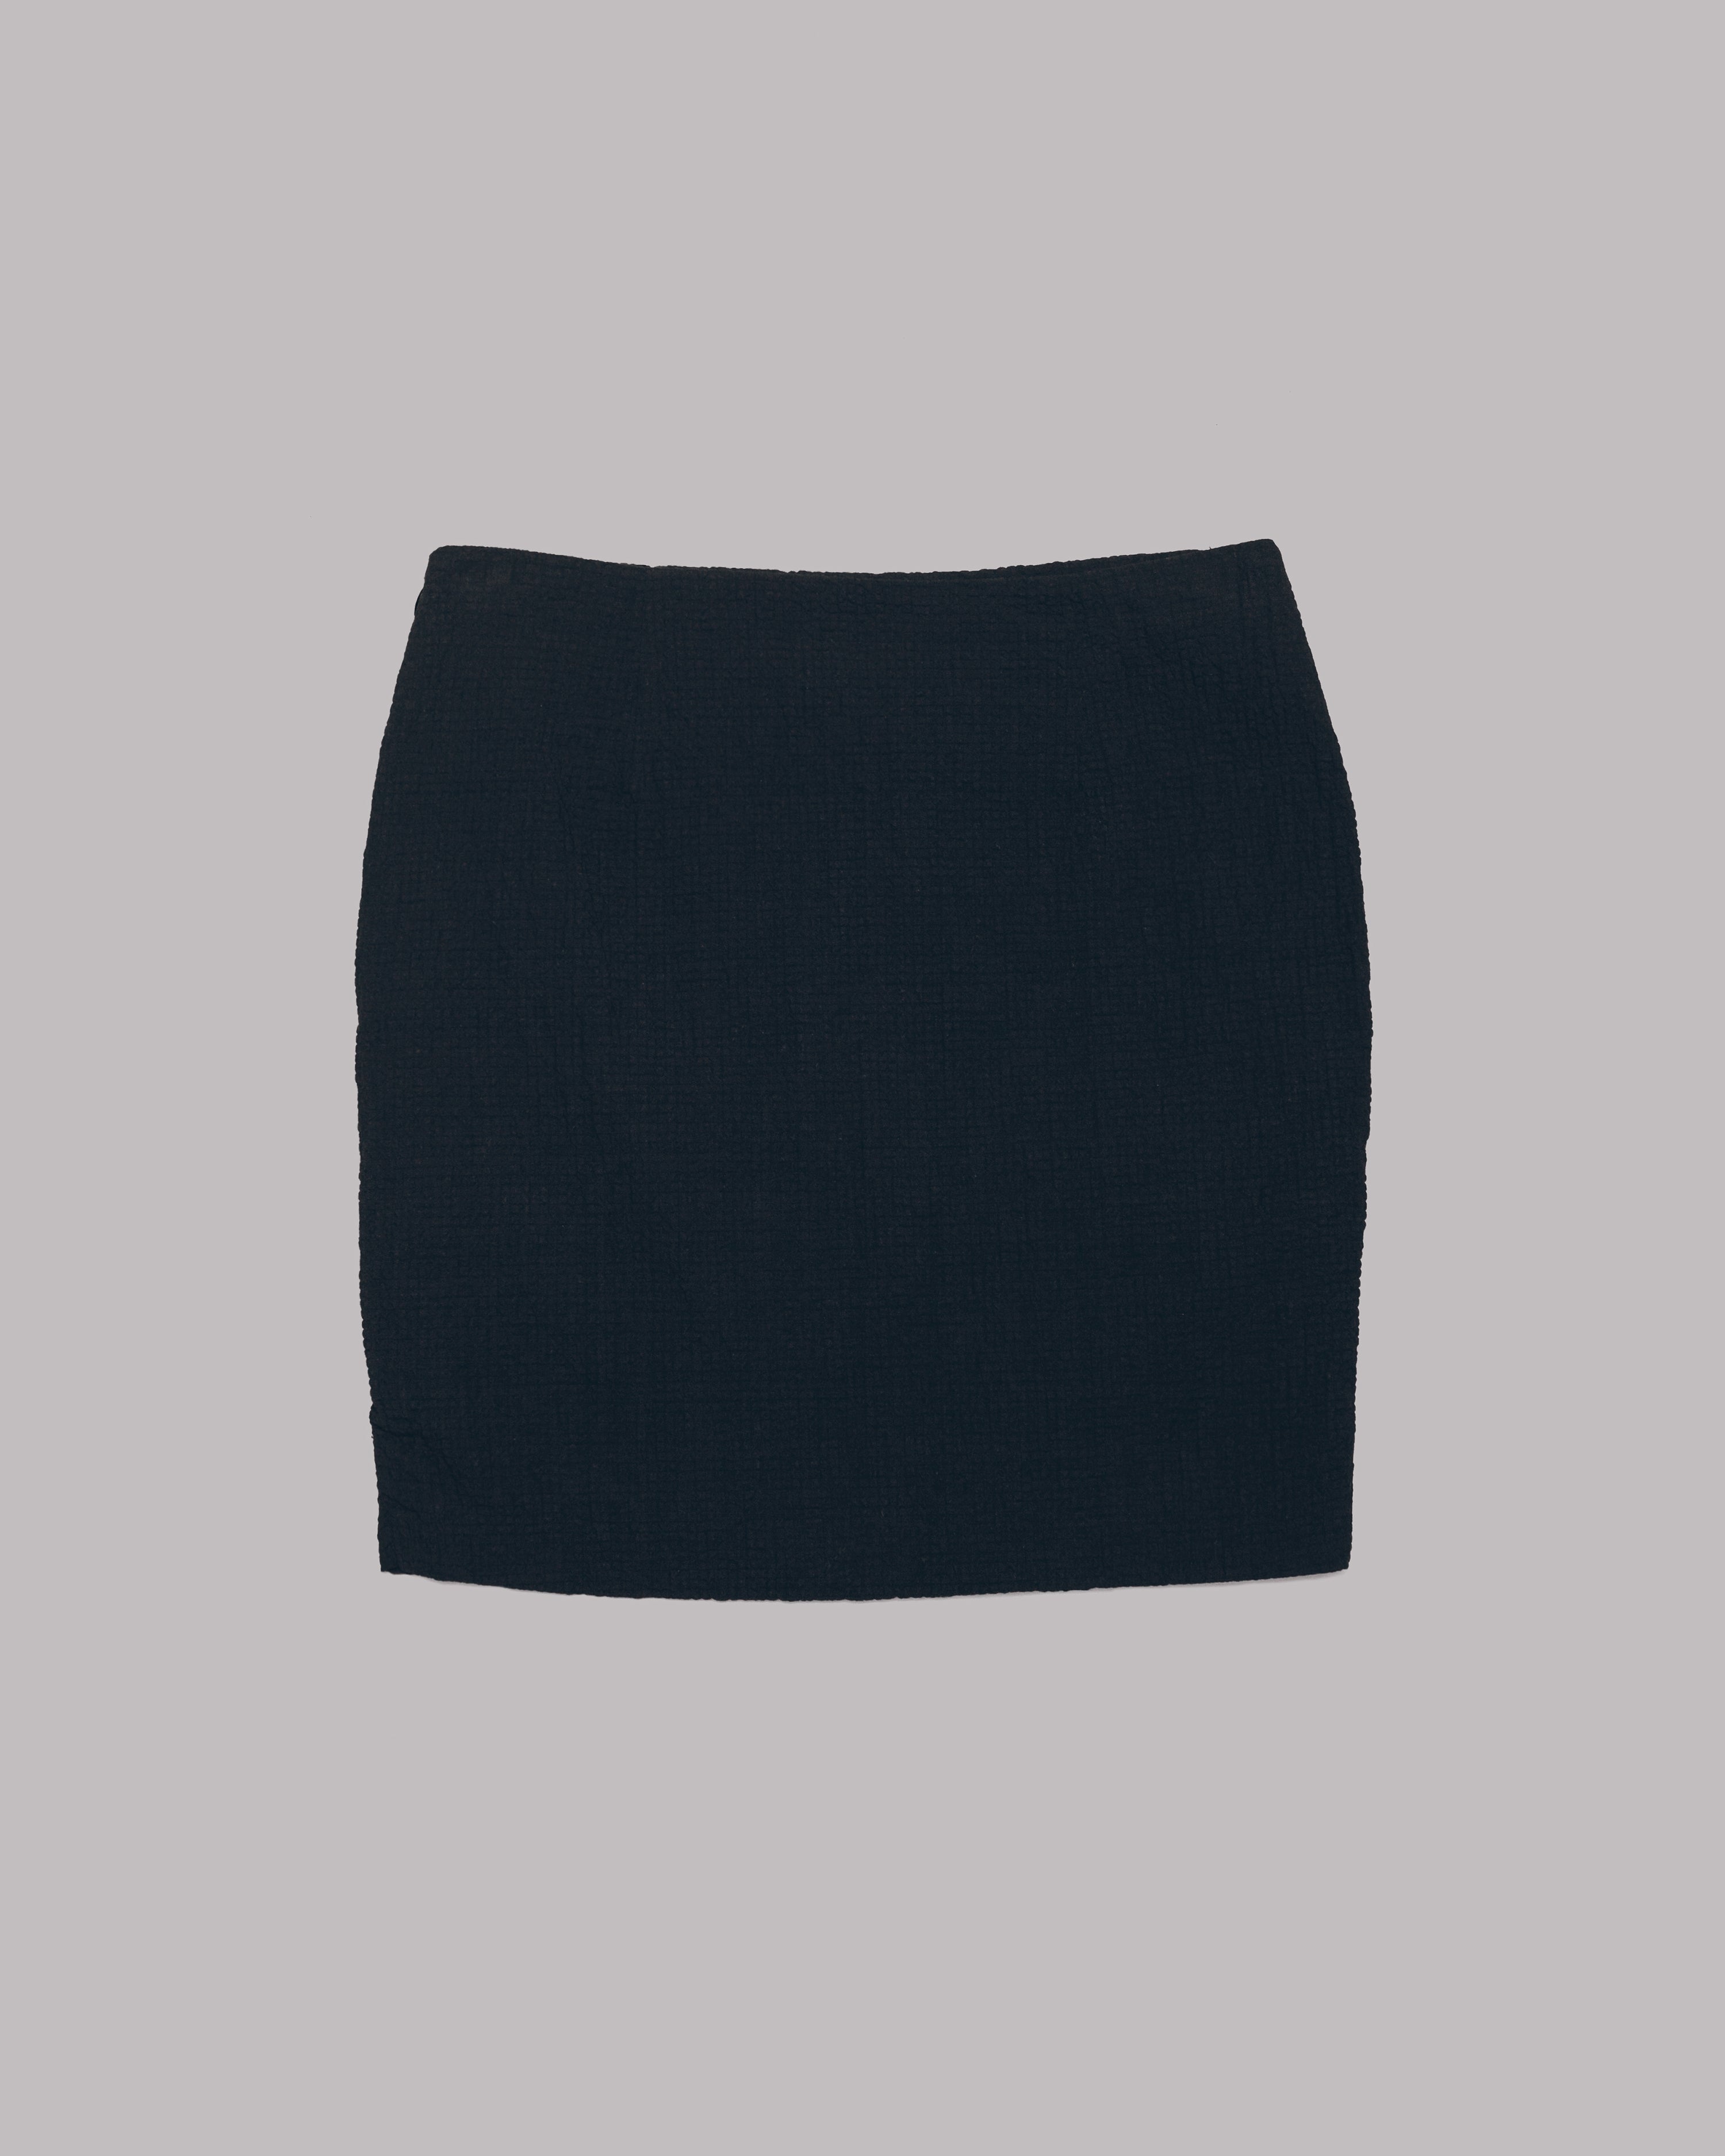 MIKUTA The Black Draped Skirt